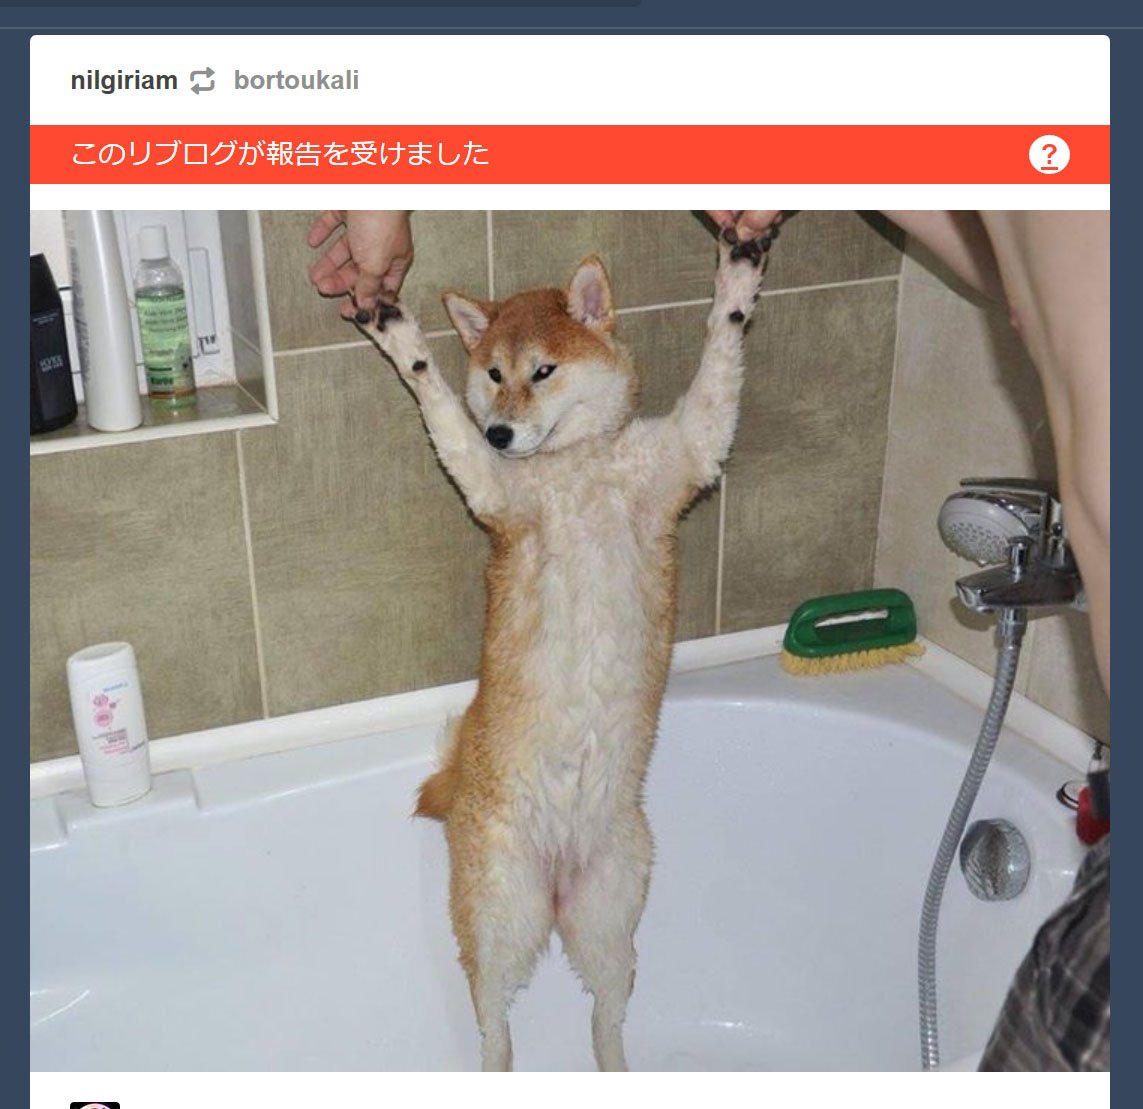 柴犬さんがお風呂にいる画像をTumblrに投稿したらアダルト判定されてしまった→たしかに全裸で無修正だがどこが問題？「右側に写った…」 -  Togetter